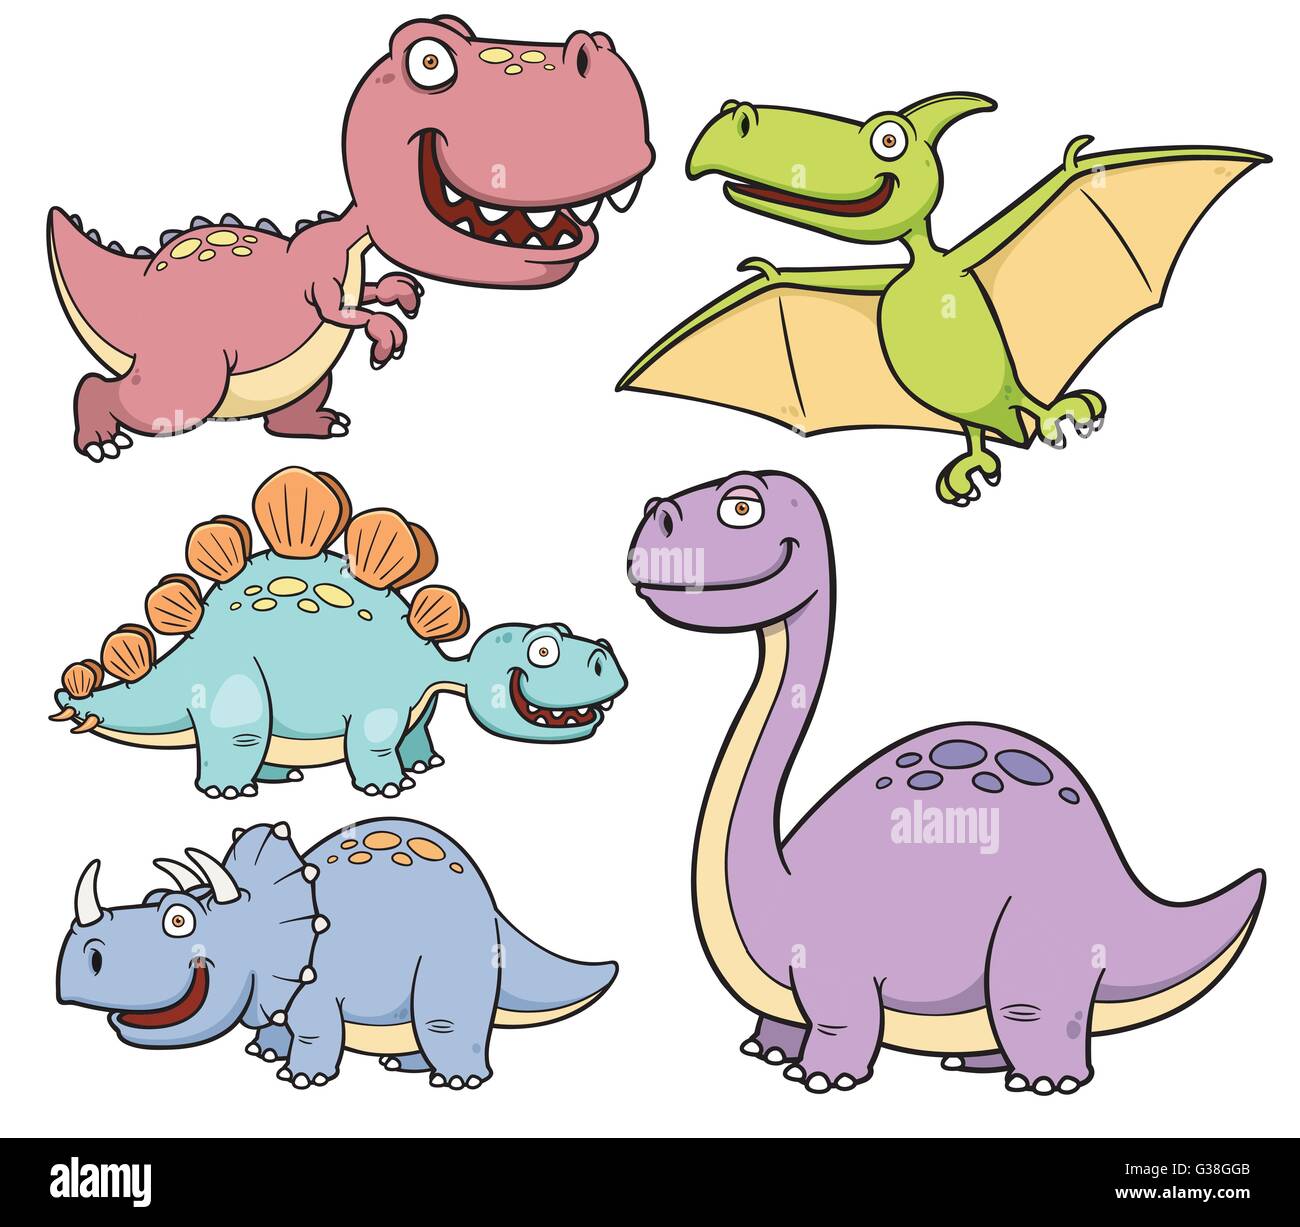 Illustrazione Vettoriale di dinosauri i personaggi dei cartoni animati Illustrazione Vettoriale